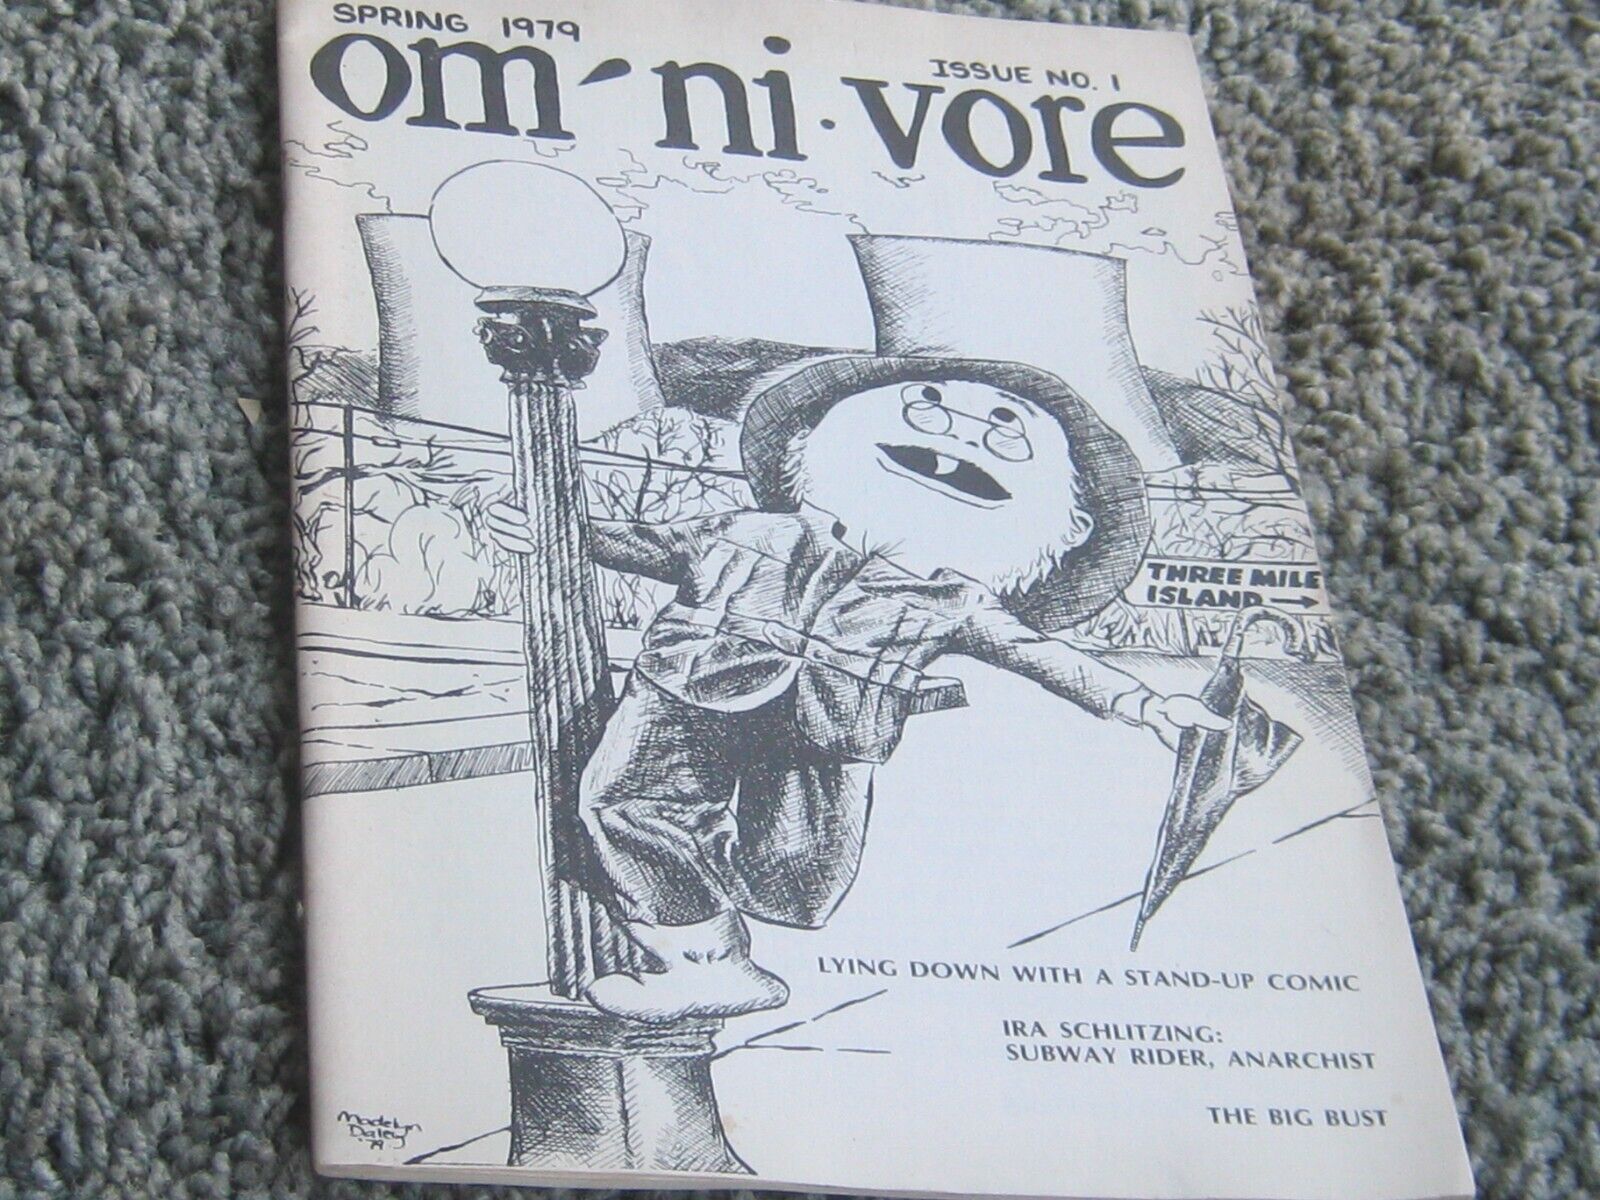 OMNIVORE. Volume 1 #1 Spring 1979. Satire/humor. Emerson College. BILL BOIS